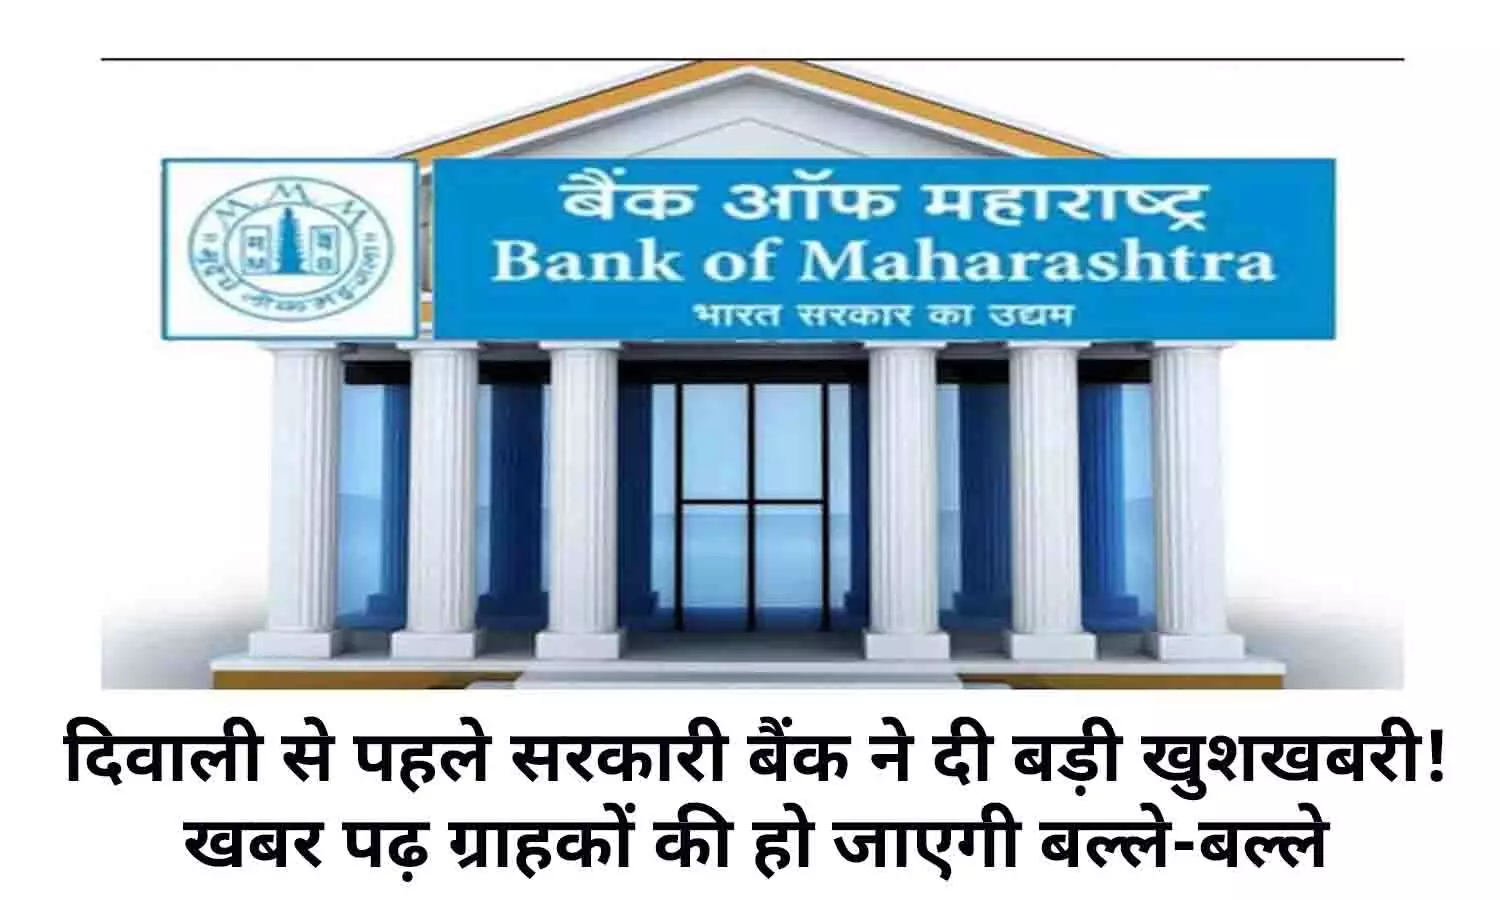 Bank of Maharashtra Festive Offer In Hindi 2022: द‍िवाली से पहले सरकारी बैंक ने दी बड़ी खुशखबरी! खबर पढ़ ग्राहकों की हो जाएगी बल्‍ले-बल्‍ले